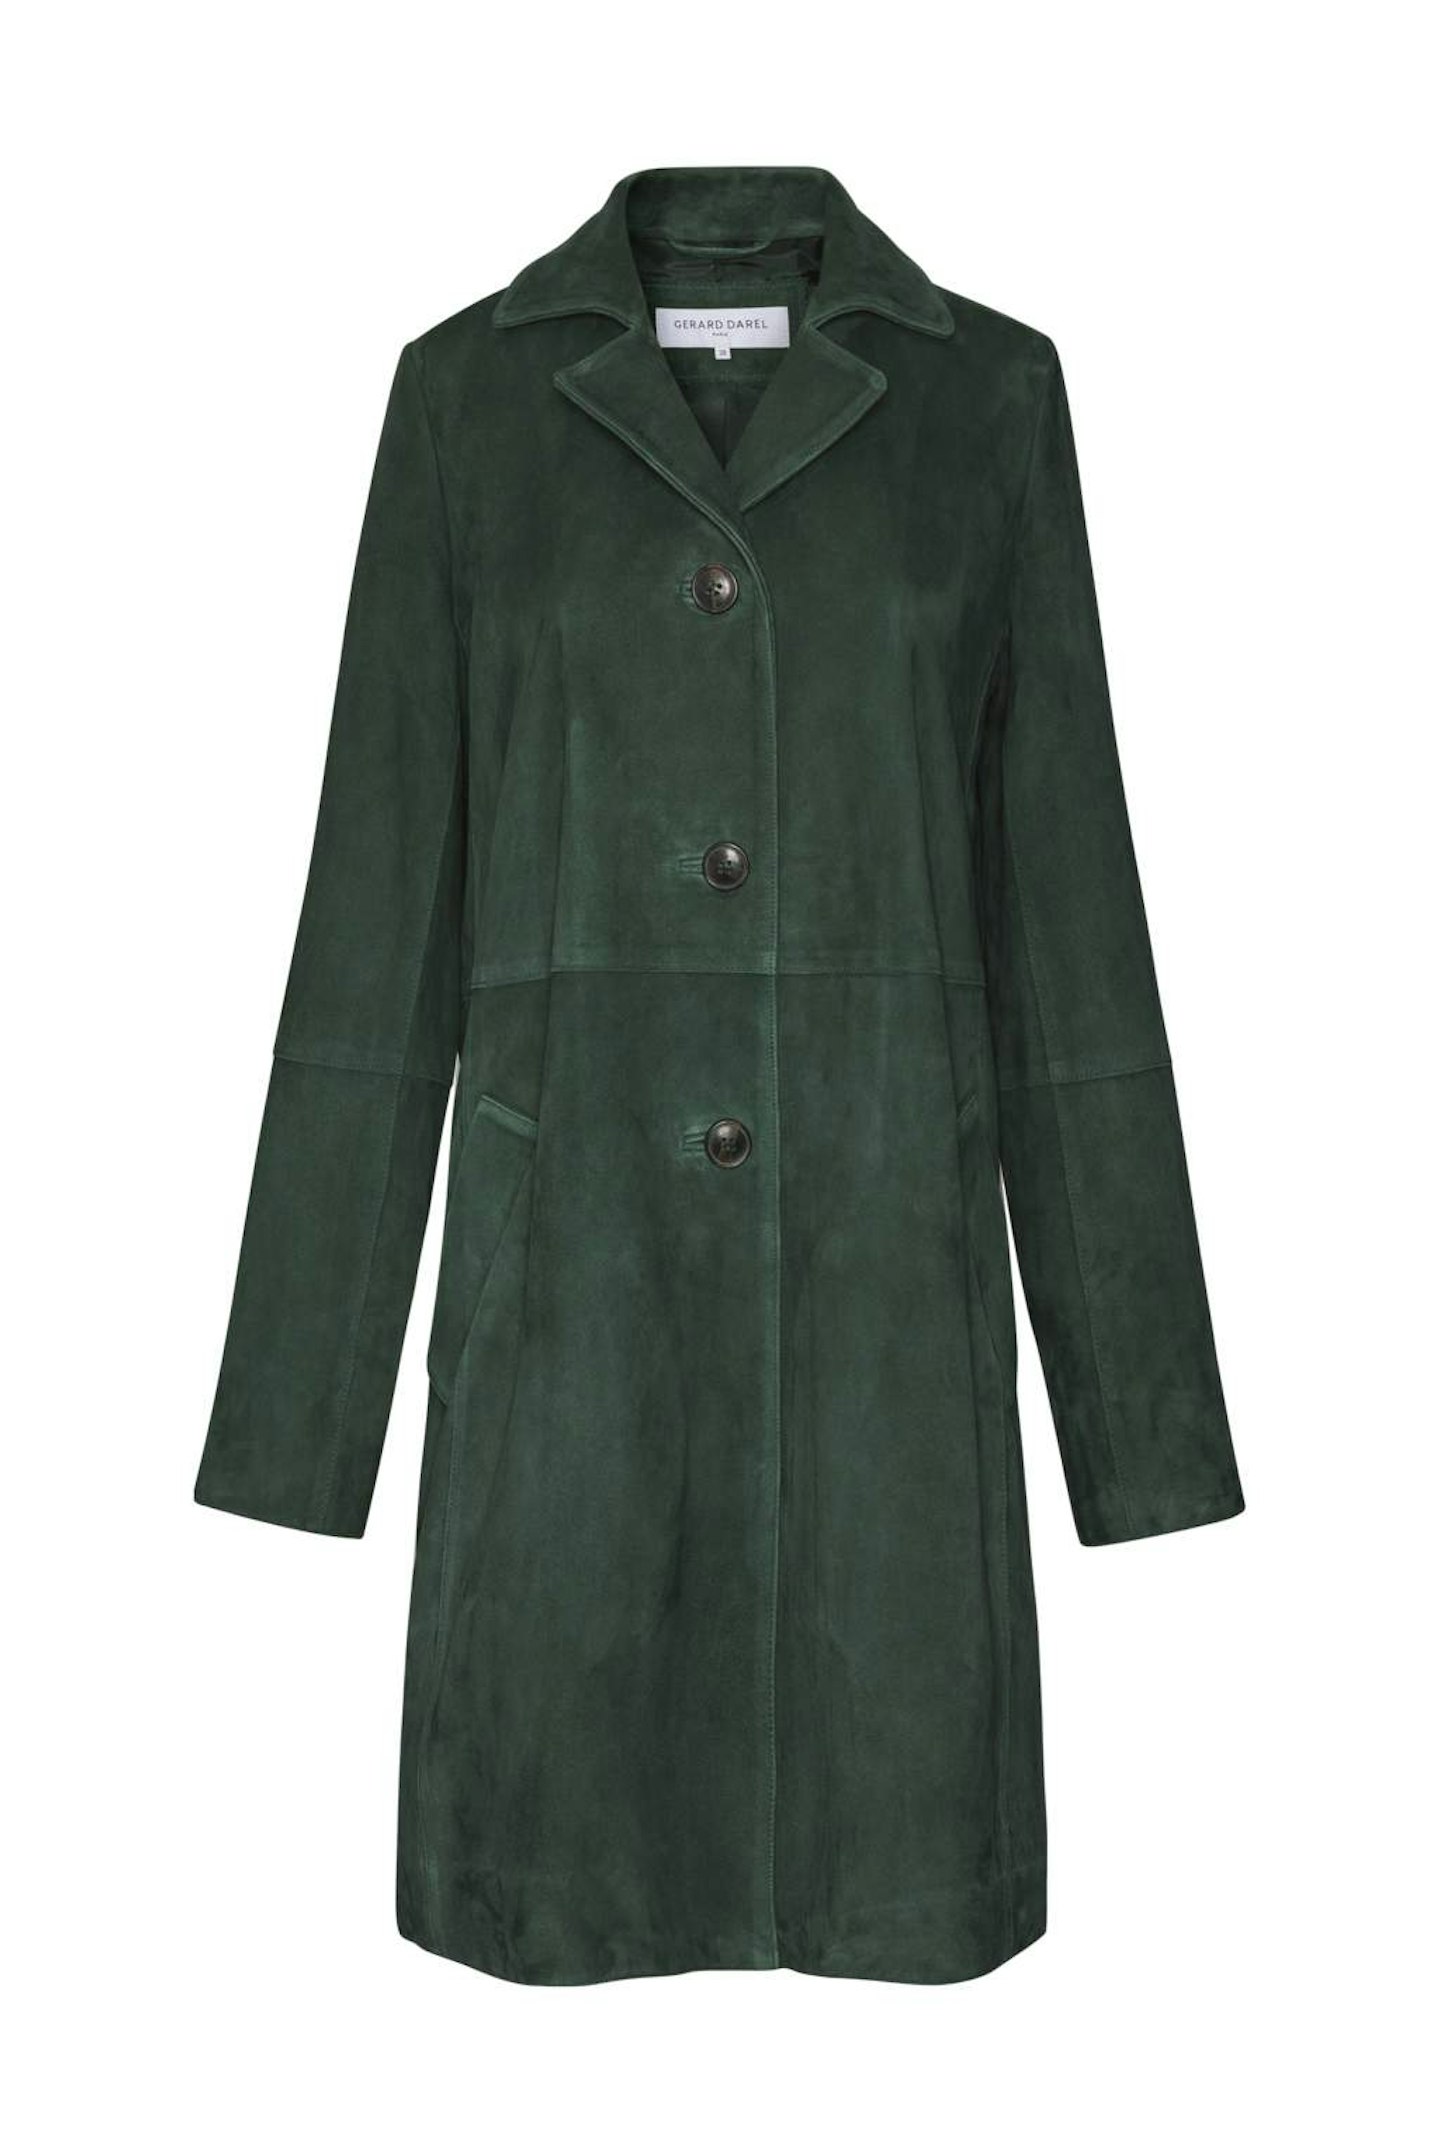 Gerard Darel, Green Suede Jacket, £595